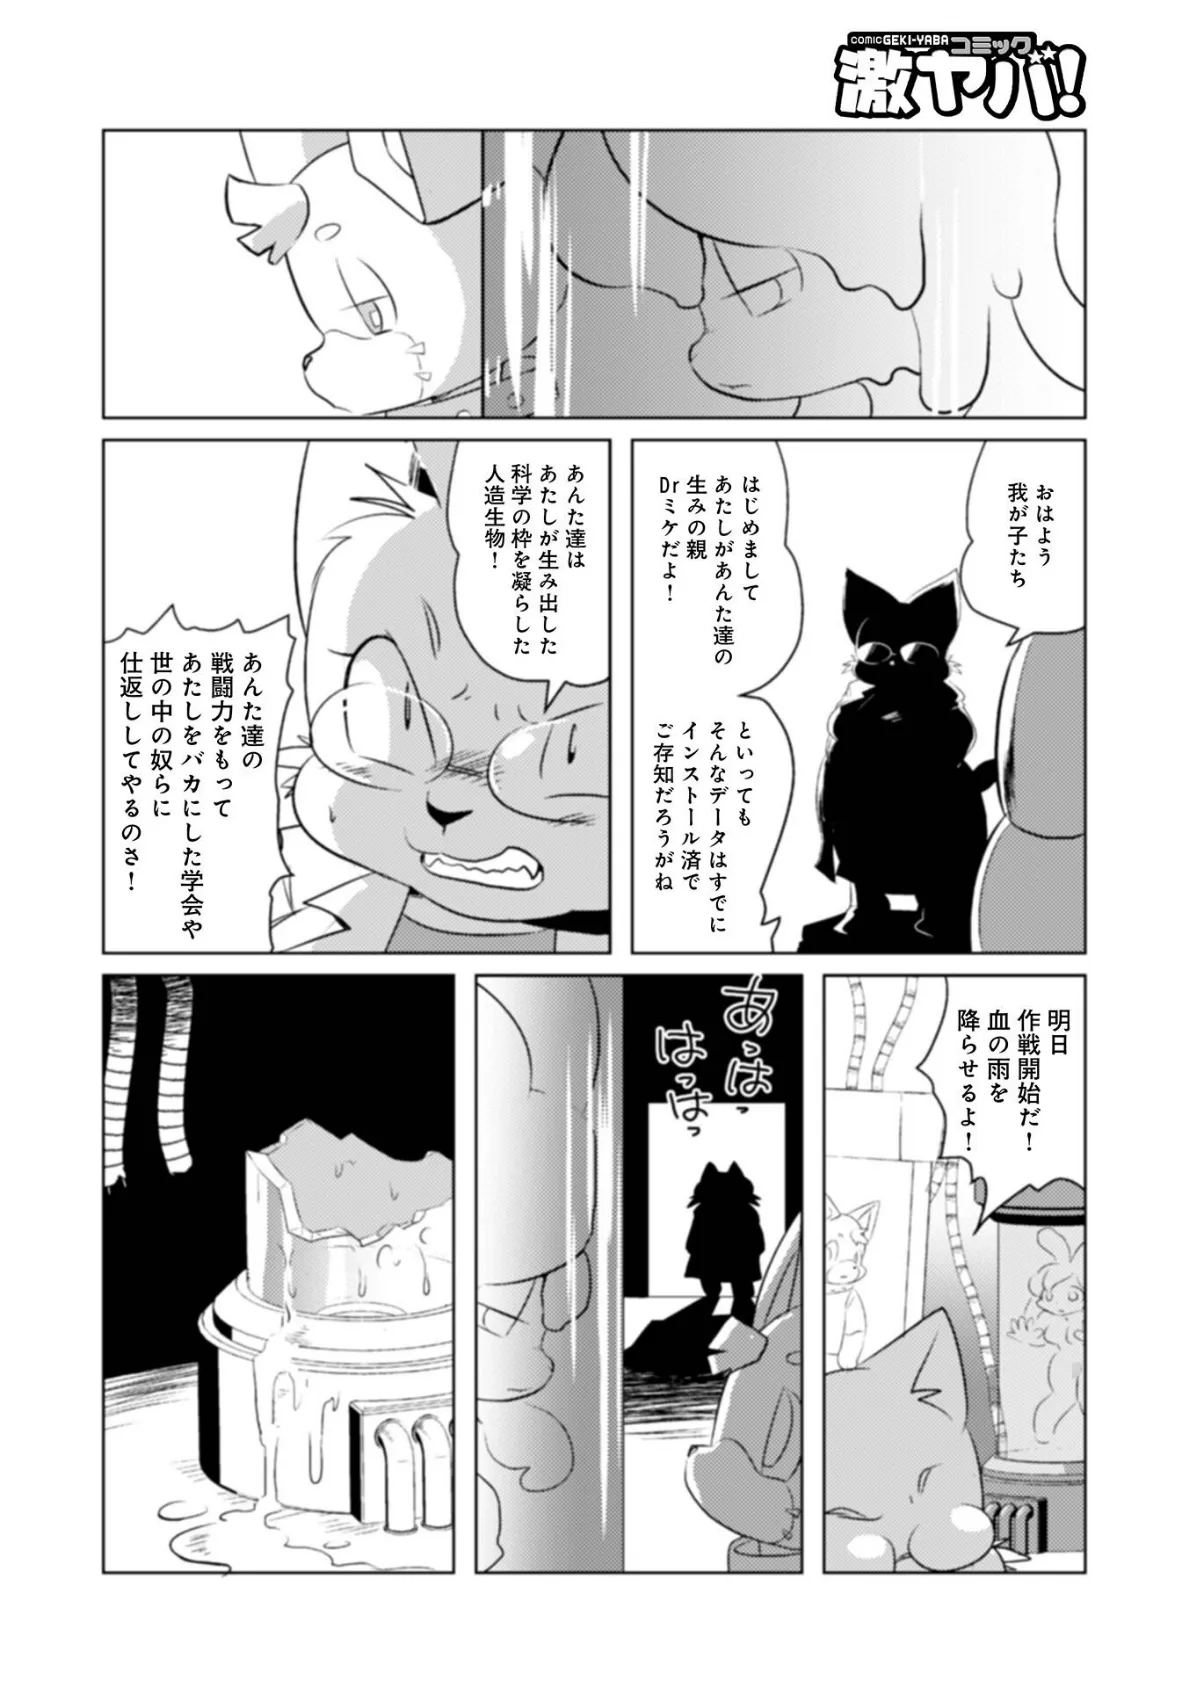 魔界探偵サバトくん第1巻 16ページ